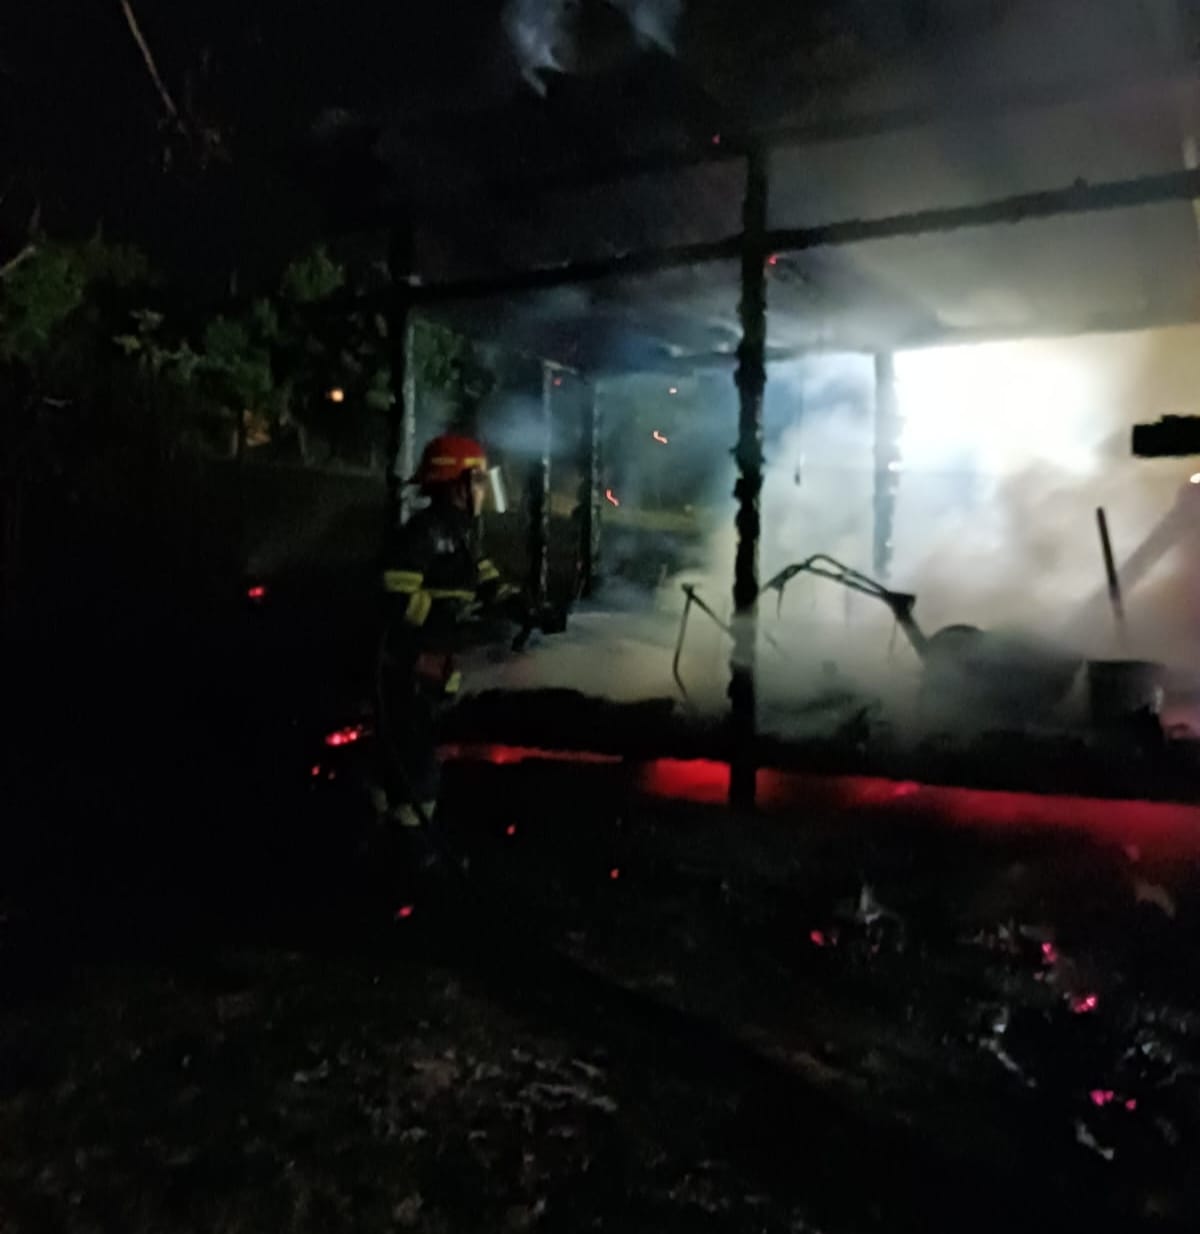 Incendiu la o magazie, pornit de la jarul din grătar. FOTO: ISU Cluj